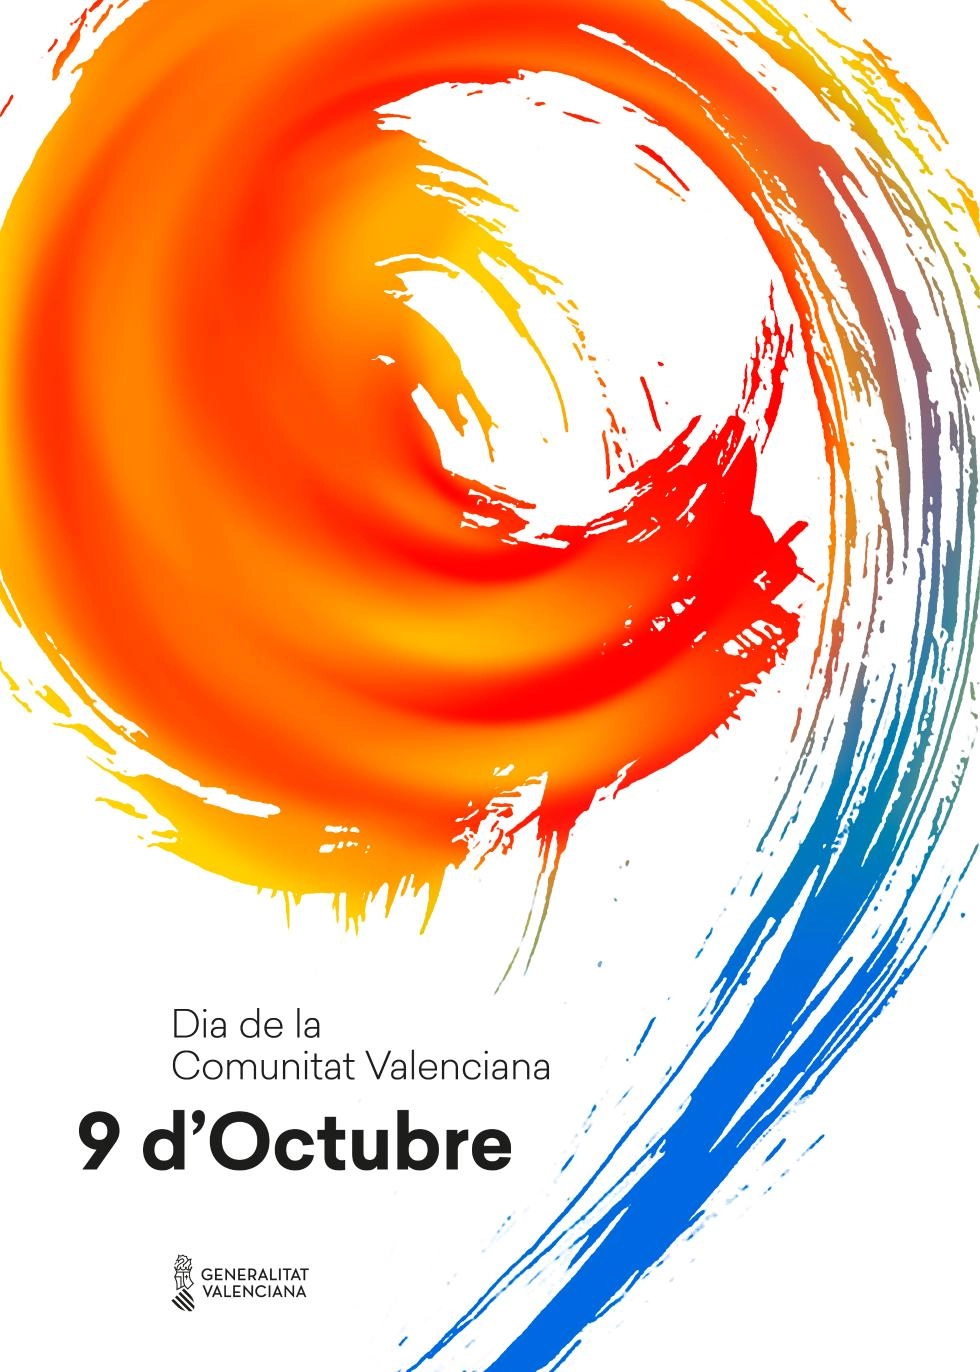 Image 4 of article La Generalitat celebra el 9 d'Octubre con conciertos, actividades infantiles y jornadas de puertas abiertas en València, Alicante, Castelló de la Plana y Elche